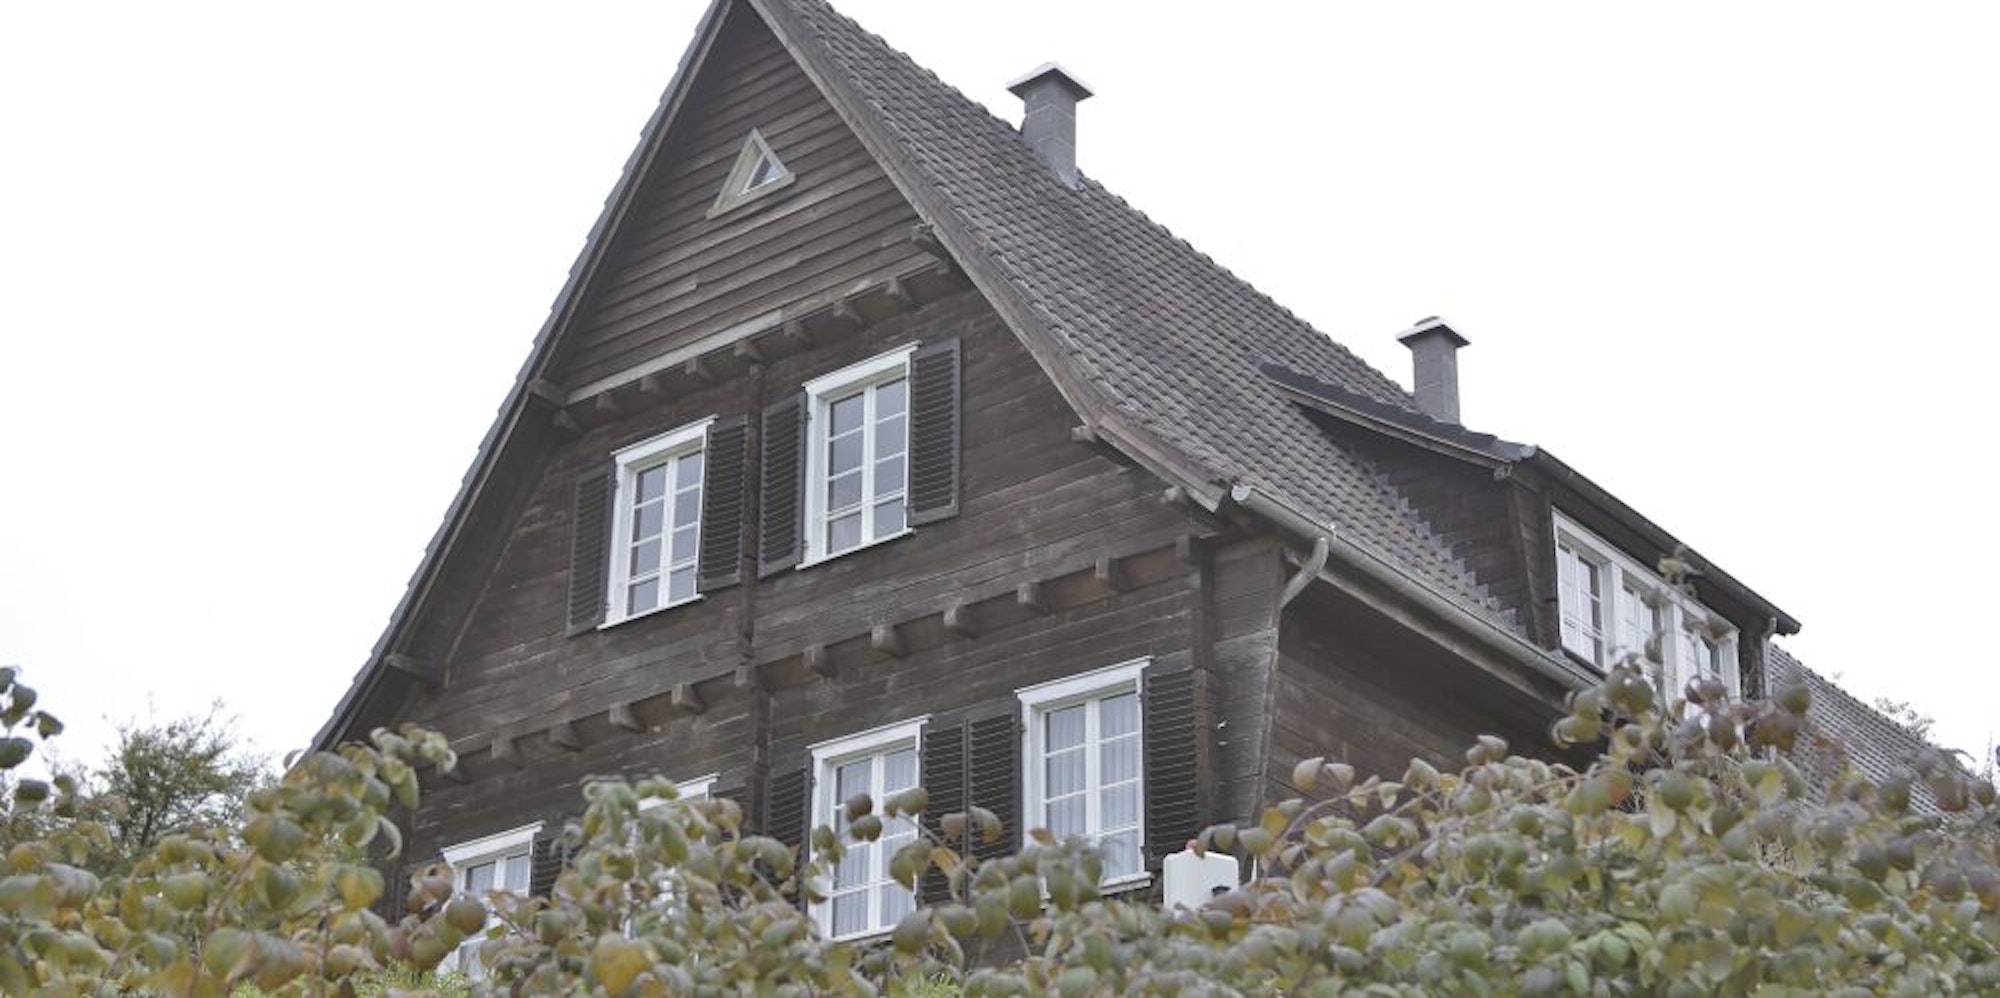 Forsthaus Broichen im Freilichtmuseum